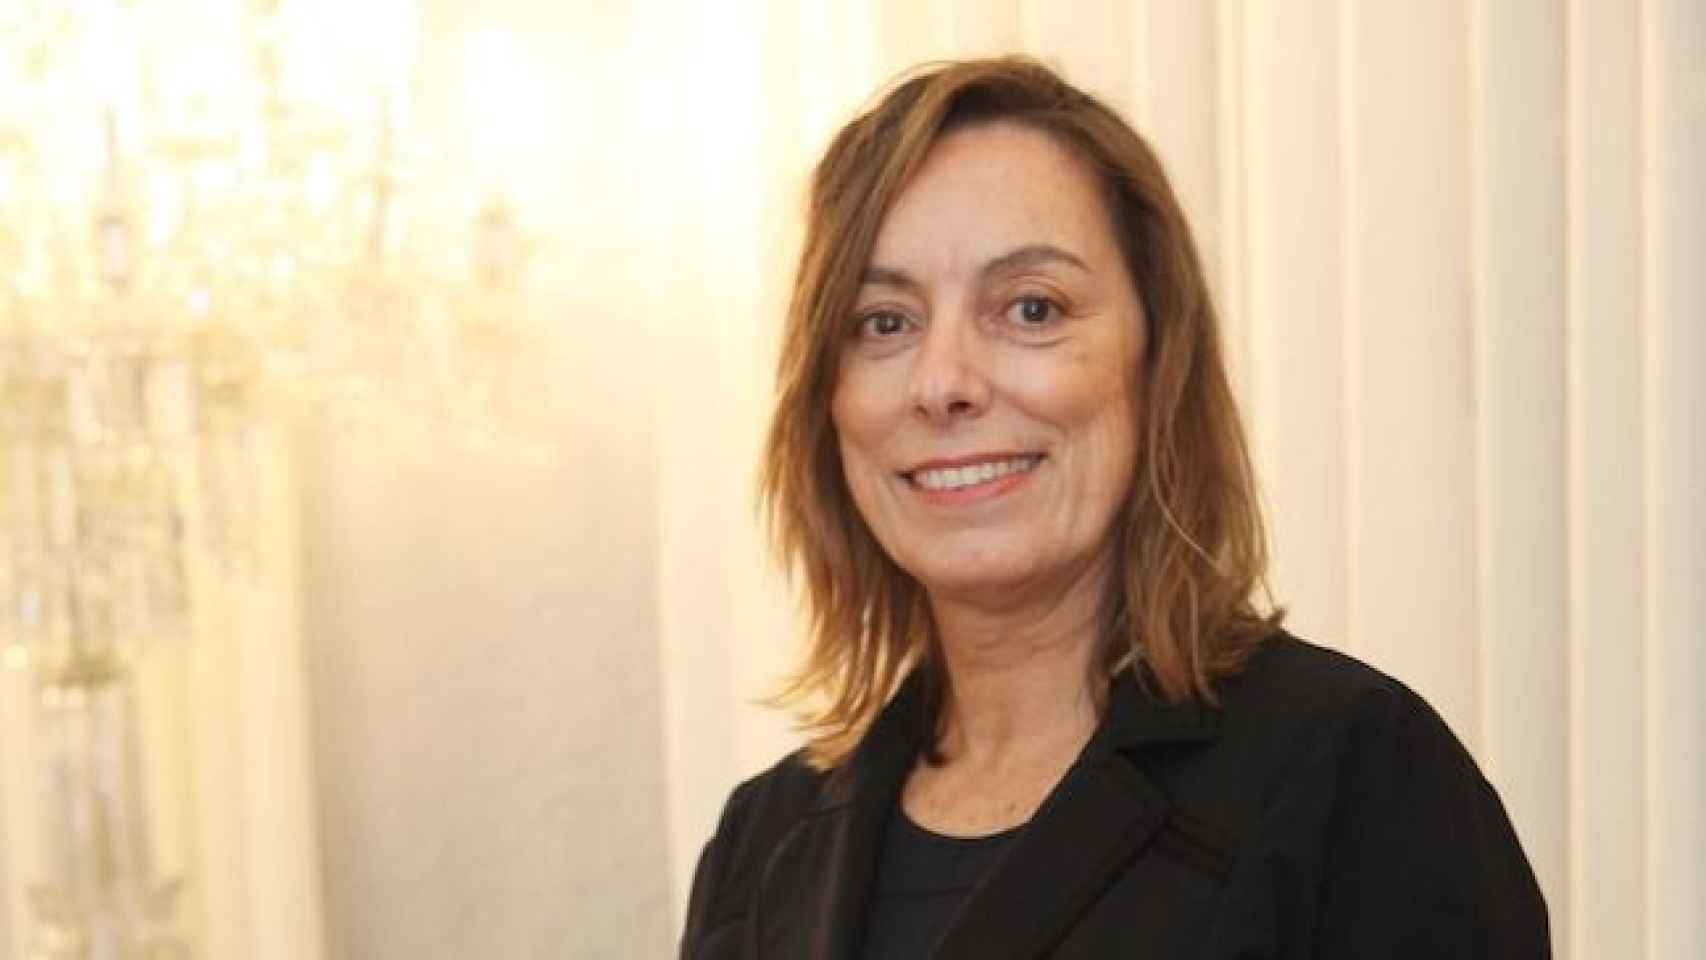 Montse Llopis, CEO de Acra, en una imagen anterior